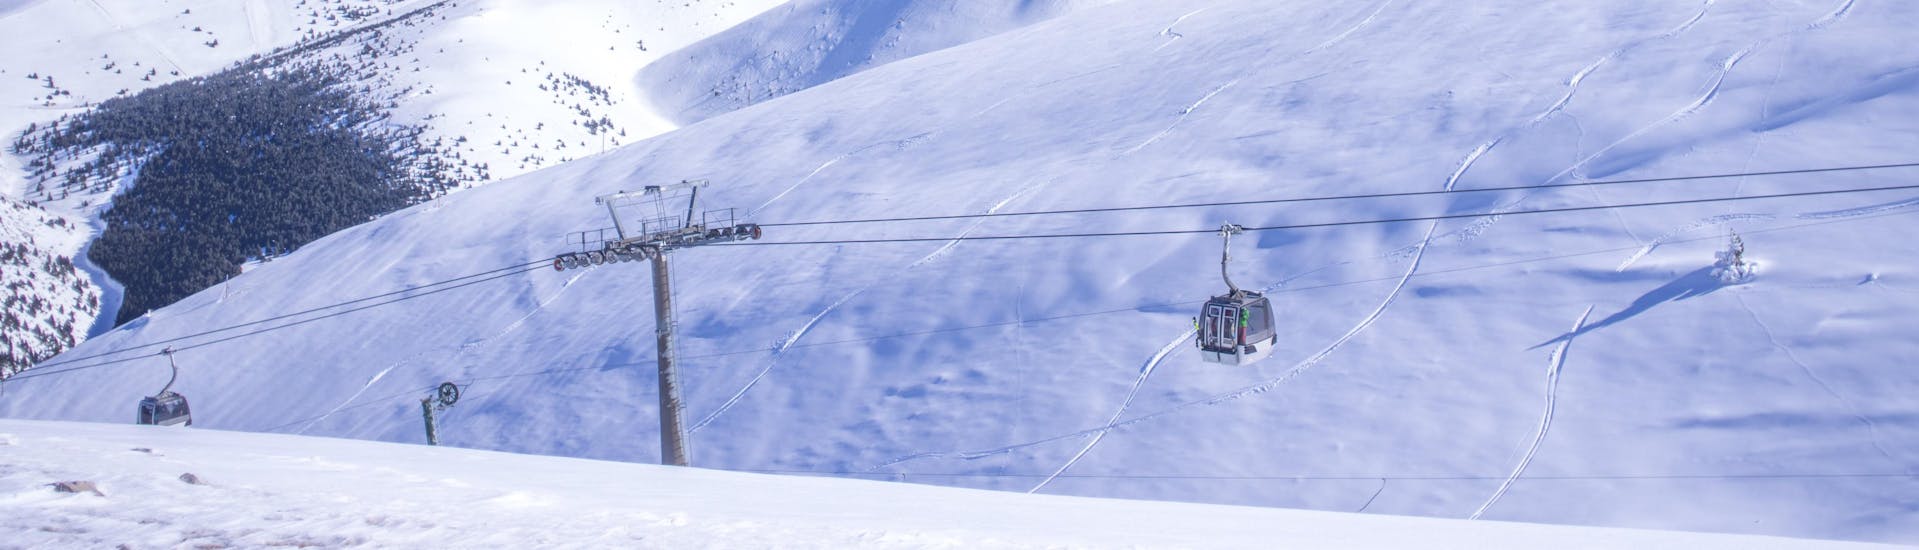 Una foto de una góndola en la estación de esquí catalana de La Molina, donde los visitantes pueden reservar un curso de esquí en una de las escuelas de esquí locales.